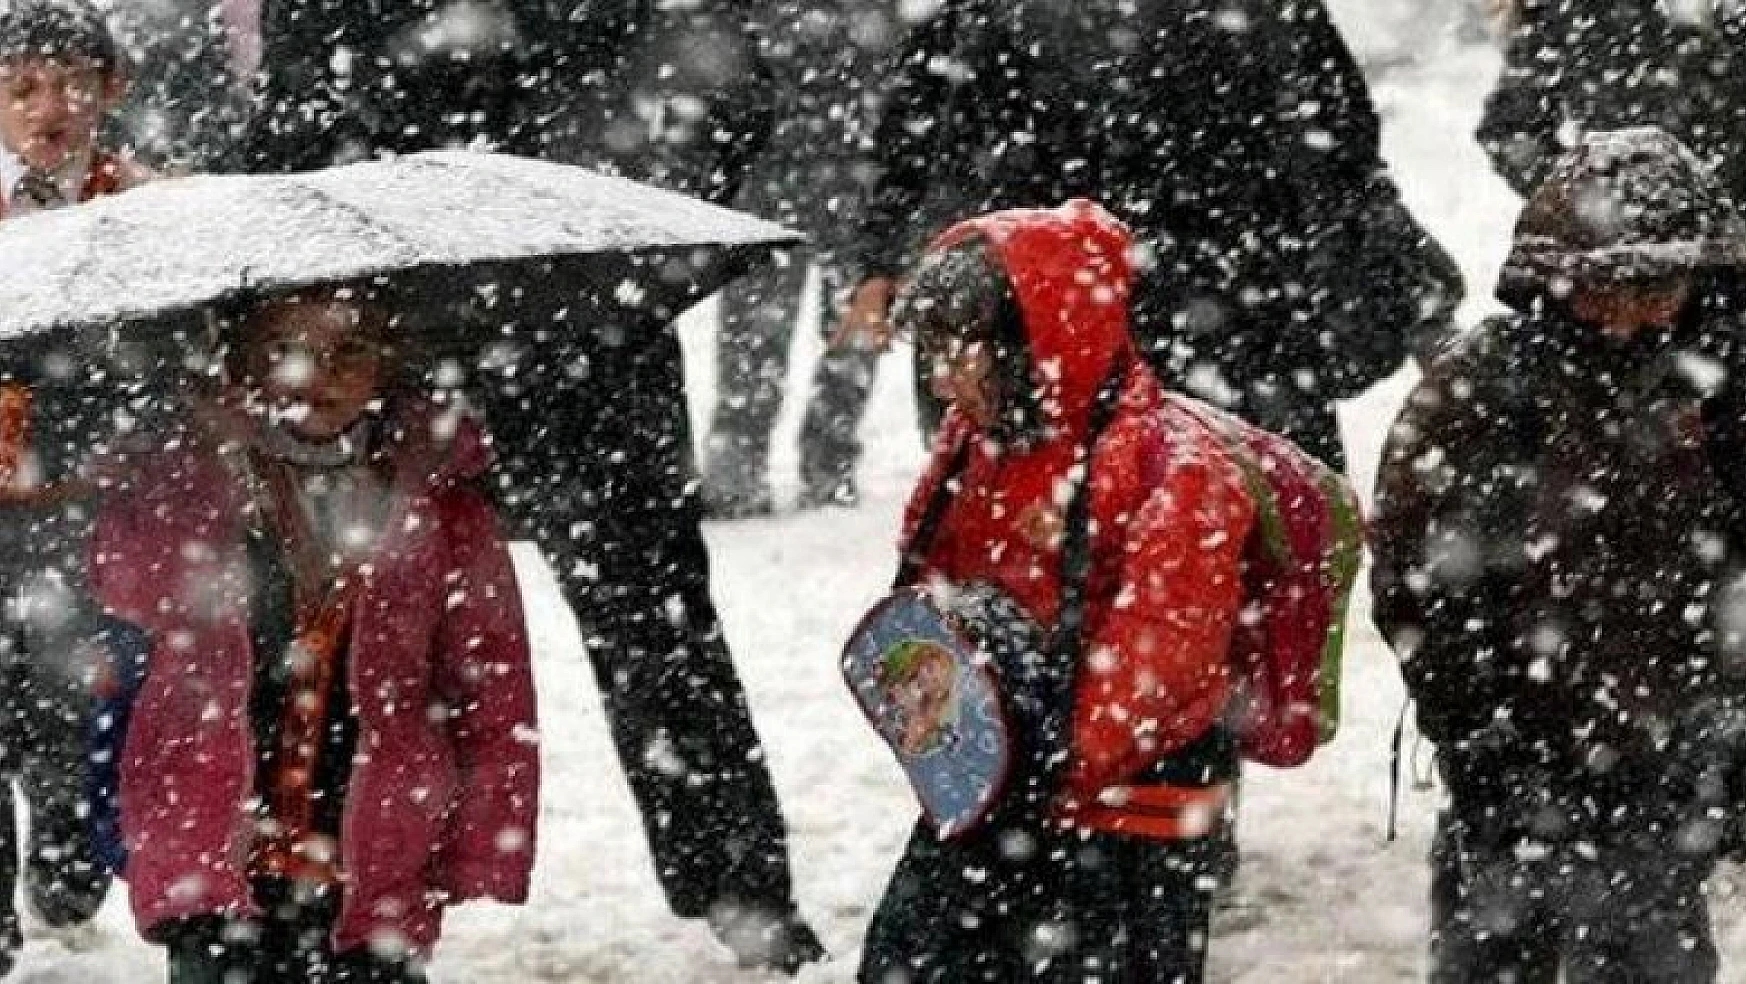 Konya'nın 13 ilçesinde kar nedeniyle bazı okullarda uzaktan eğitim yapılacak